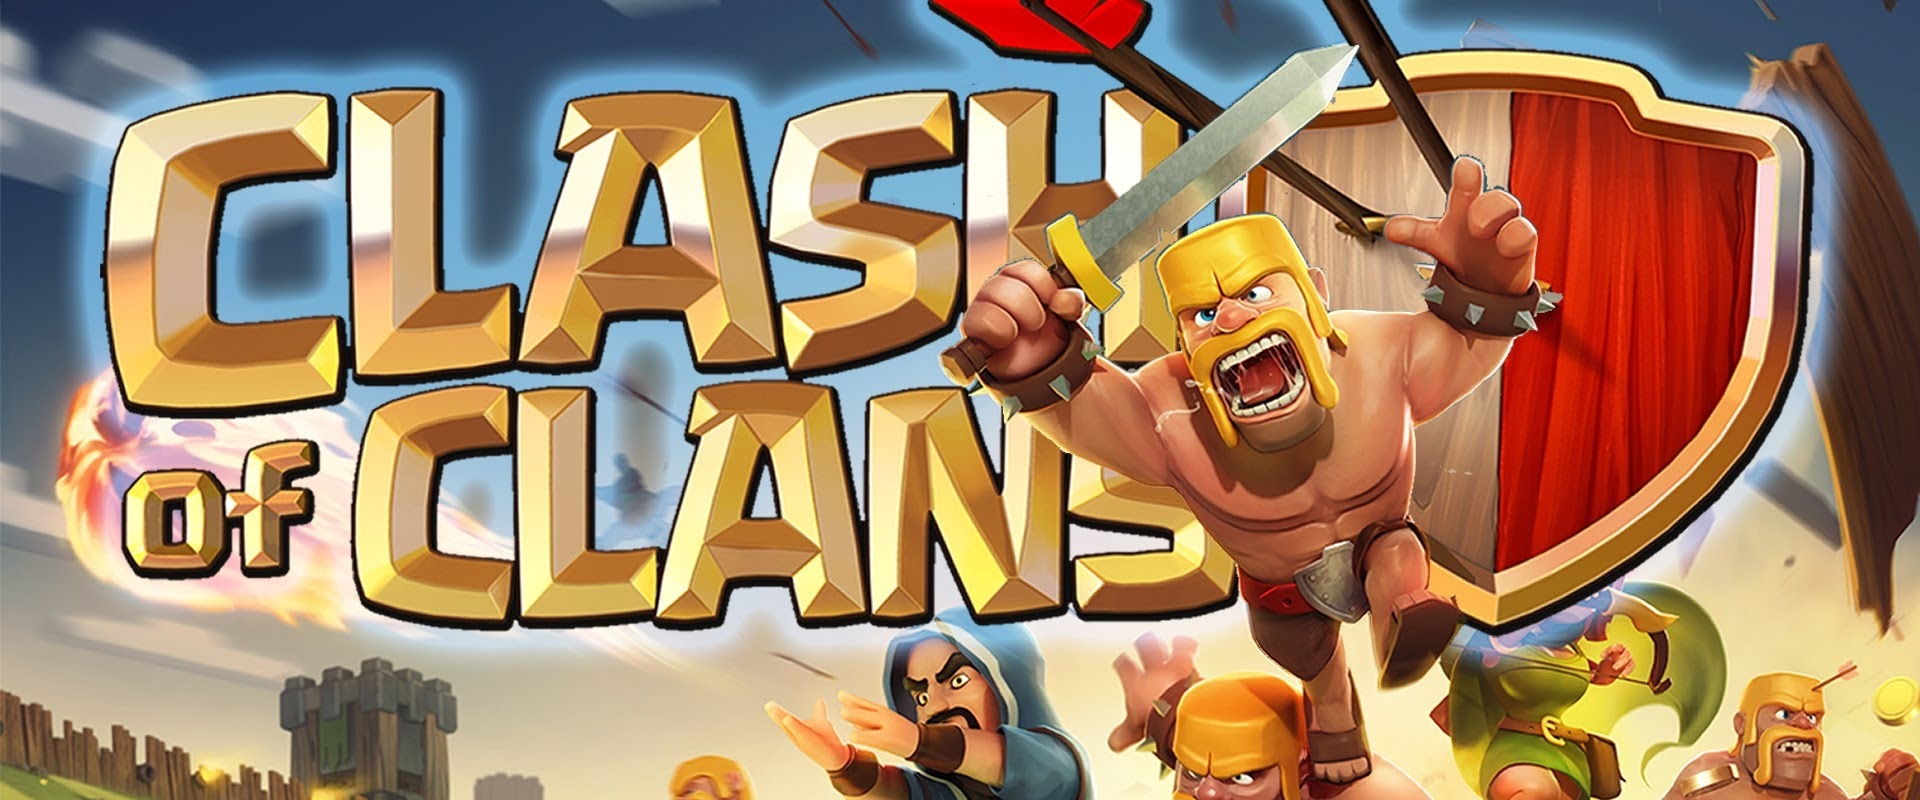 1 millió dolláros összdíjazással indul a Clash of Clans világbajnokság